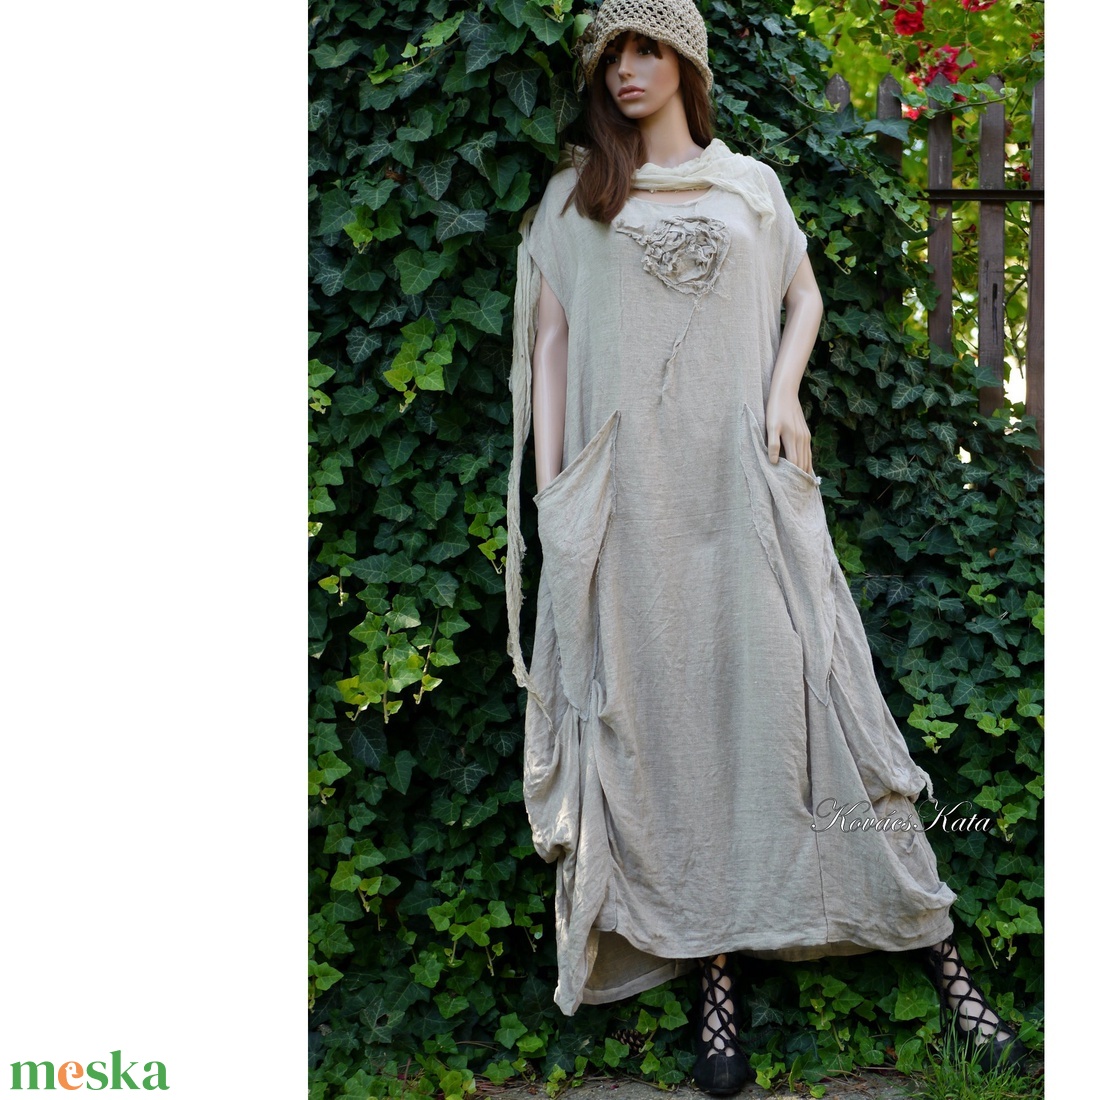 KIM / FLAX NATÚR - lagenlook flax lenvászon design ruha - ruha & divat - női ruha - ruha - Meska.hu